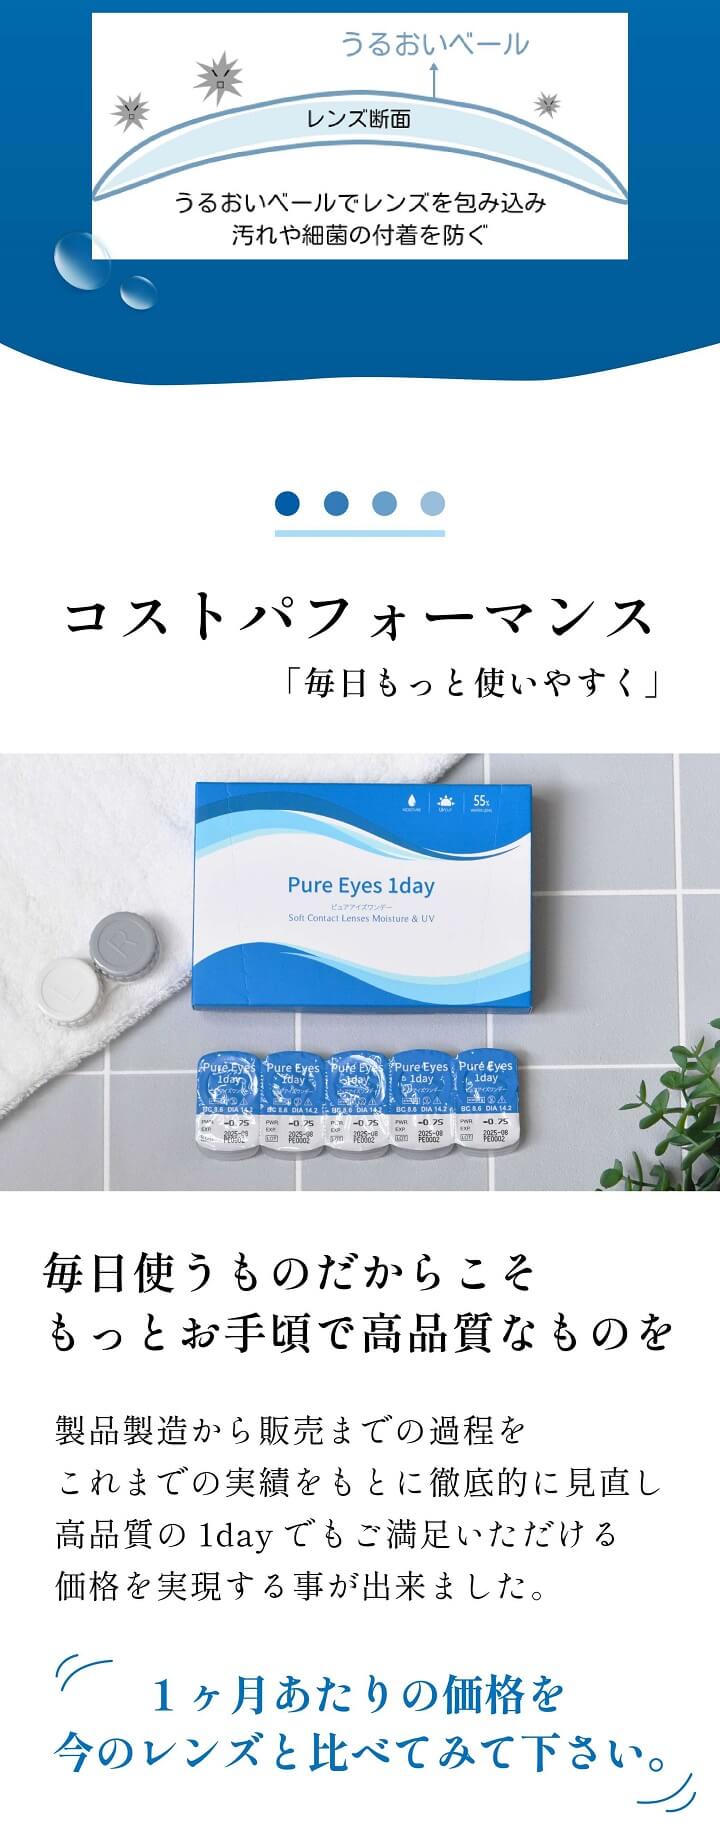 ワンデーコンタクトレンズ「ピュアアイズワンデー（Pure Eyes 1day）」のレンズの特長 - UVカットとヒアルロン酸2倍の保湿成分配合